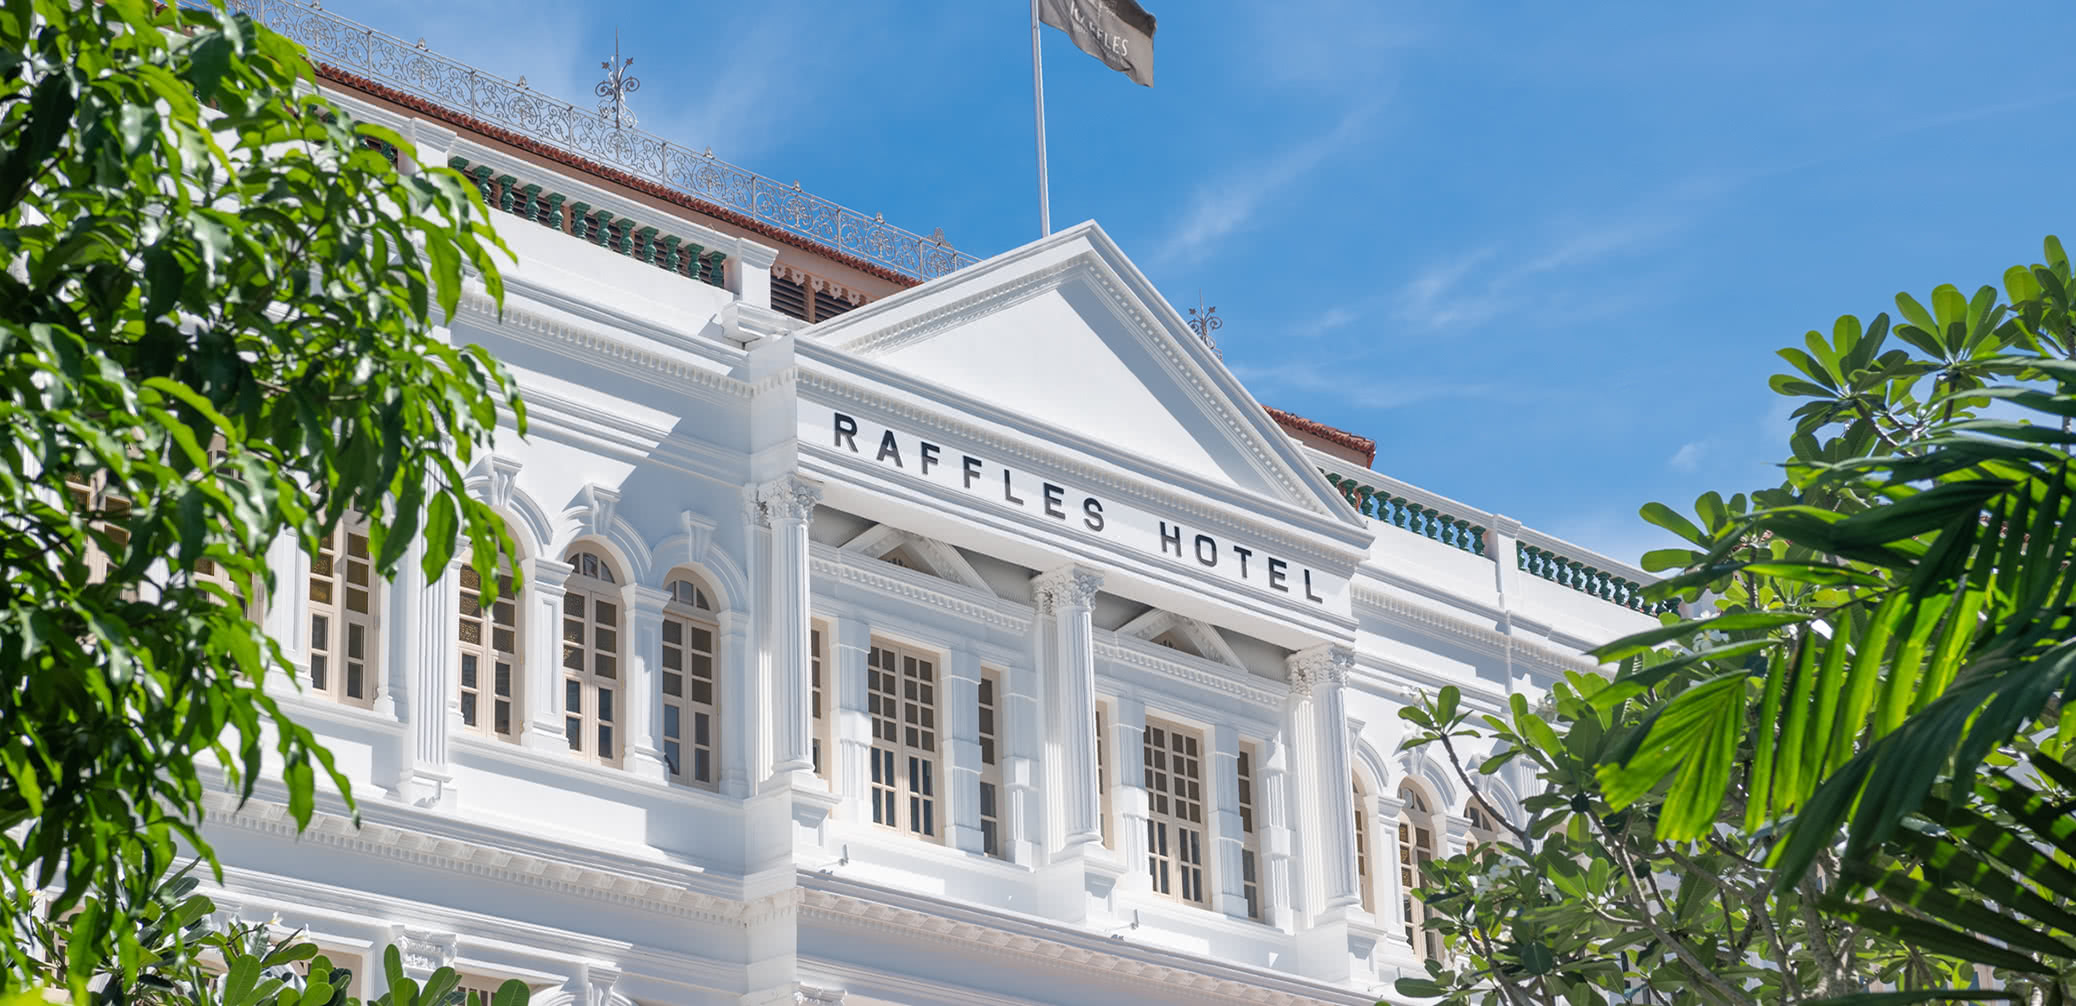 Best In Singapore: Fullerton Vs Raffles Vs Ritz Vs Four Seasons Vs St Regis